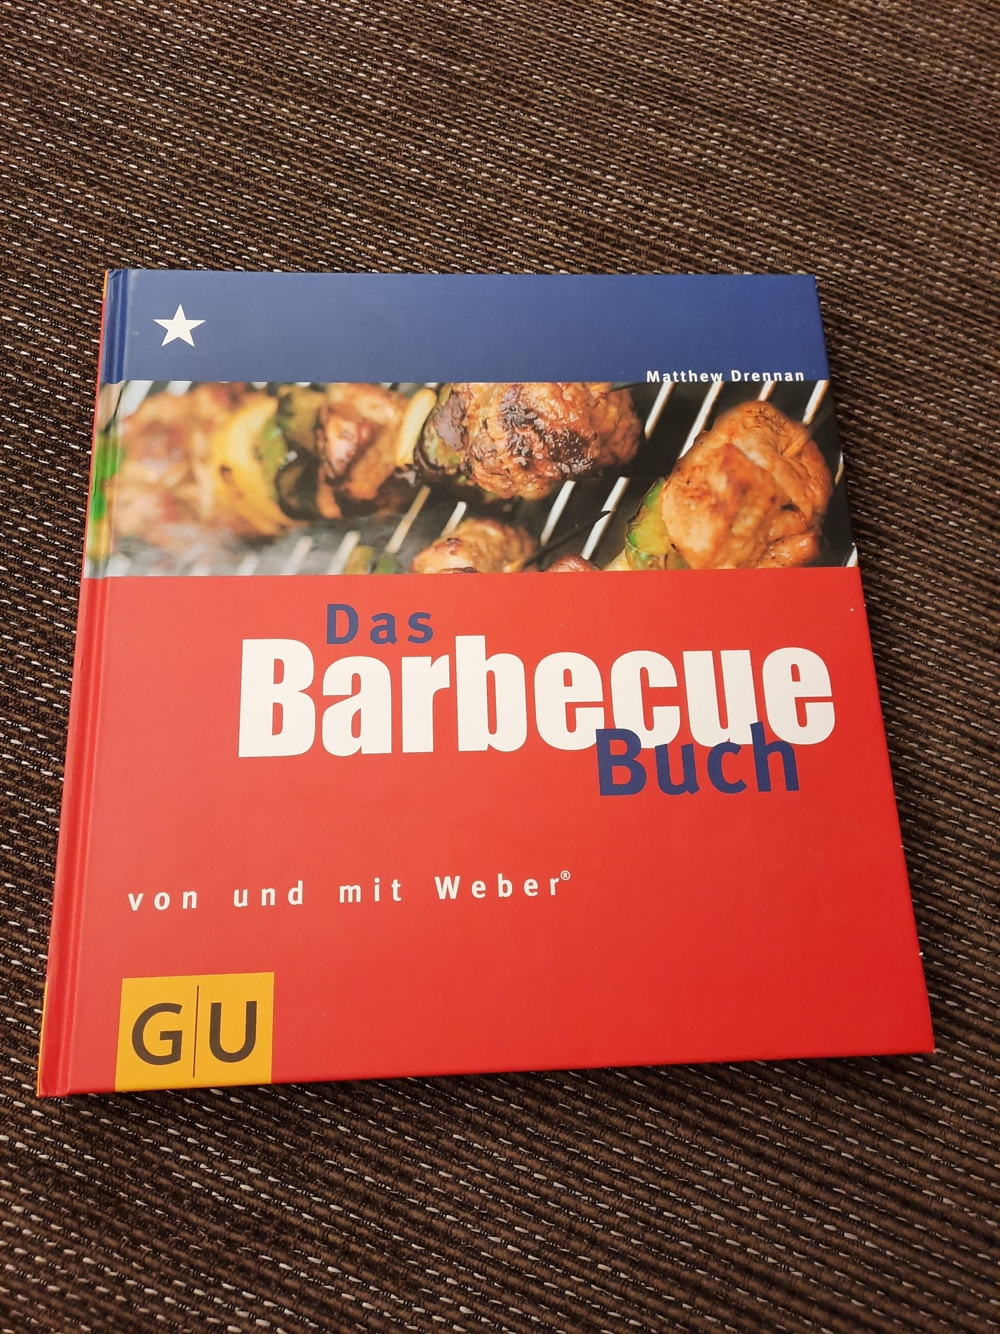 Das Barbecue Buch von und mit Weber